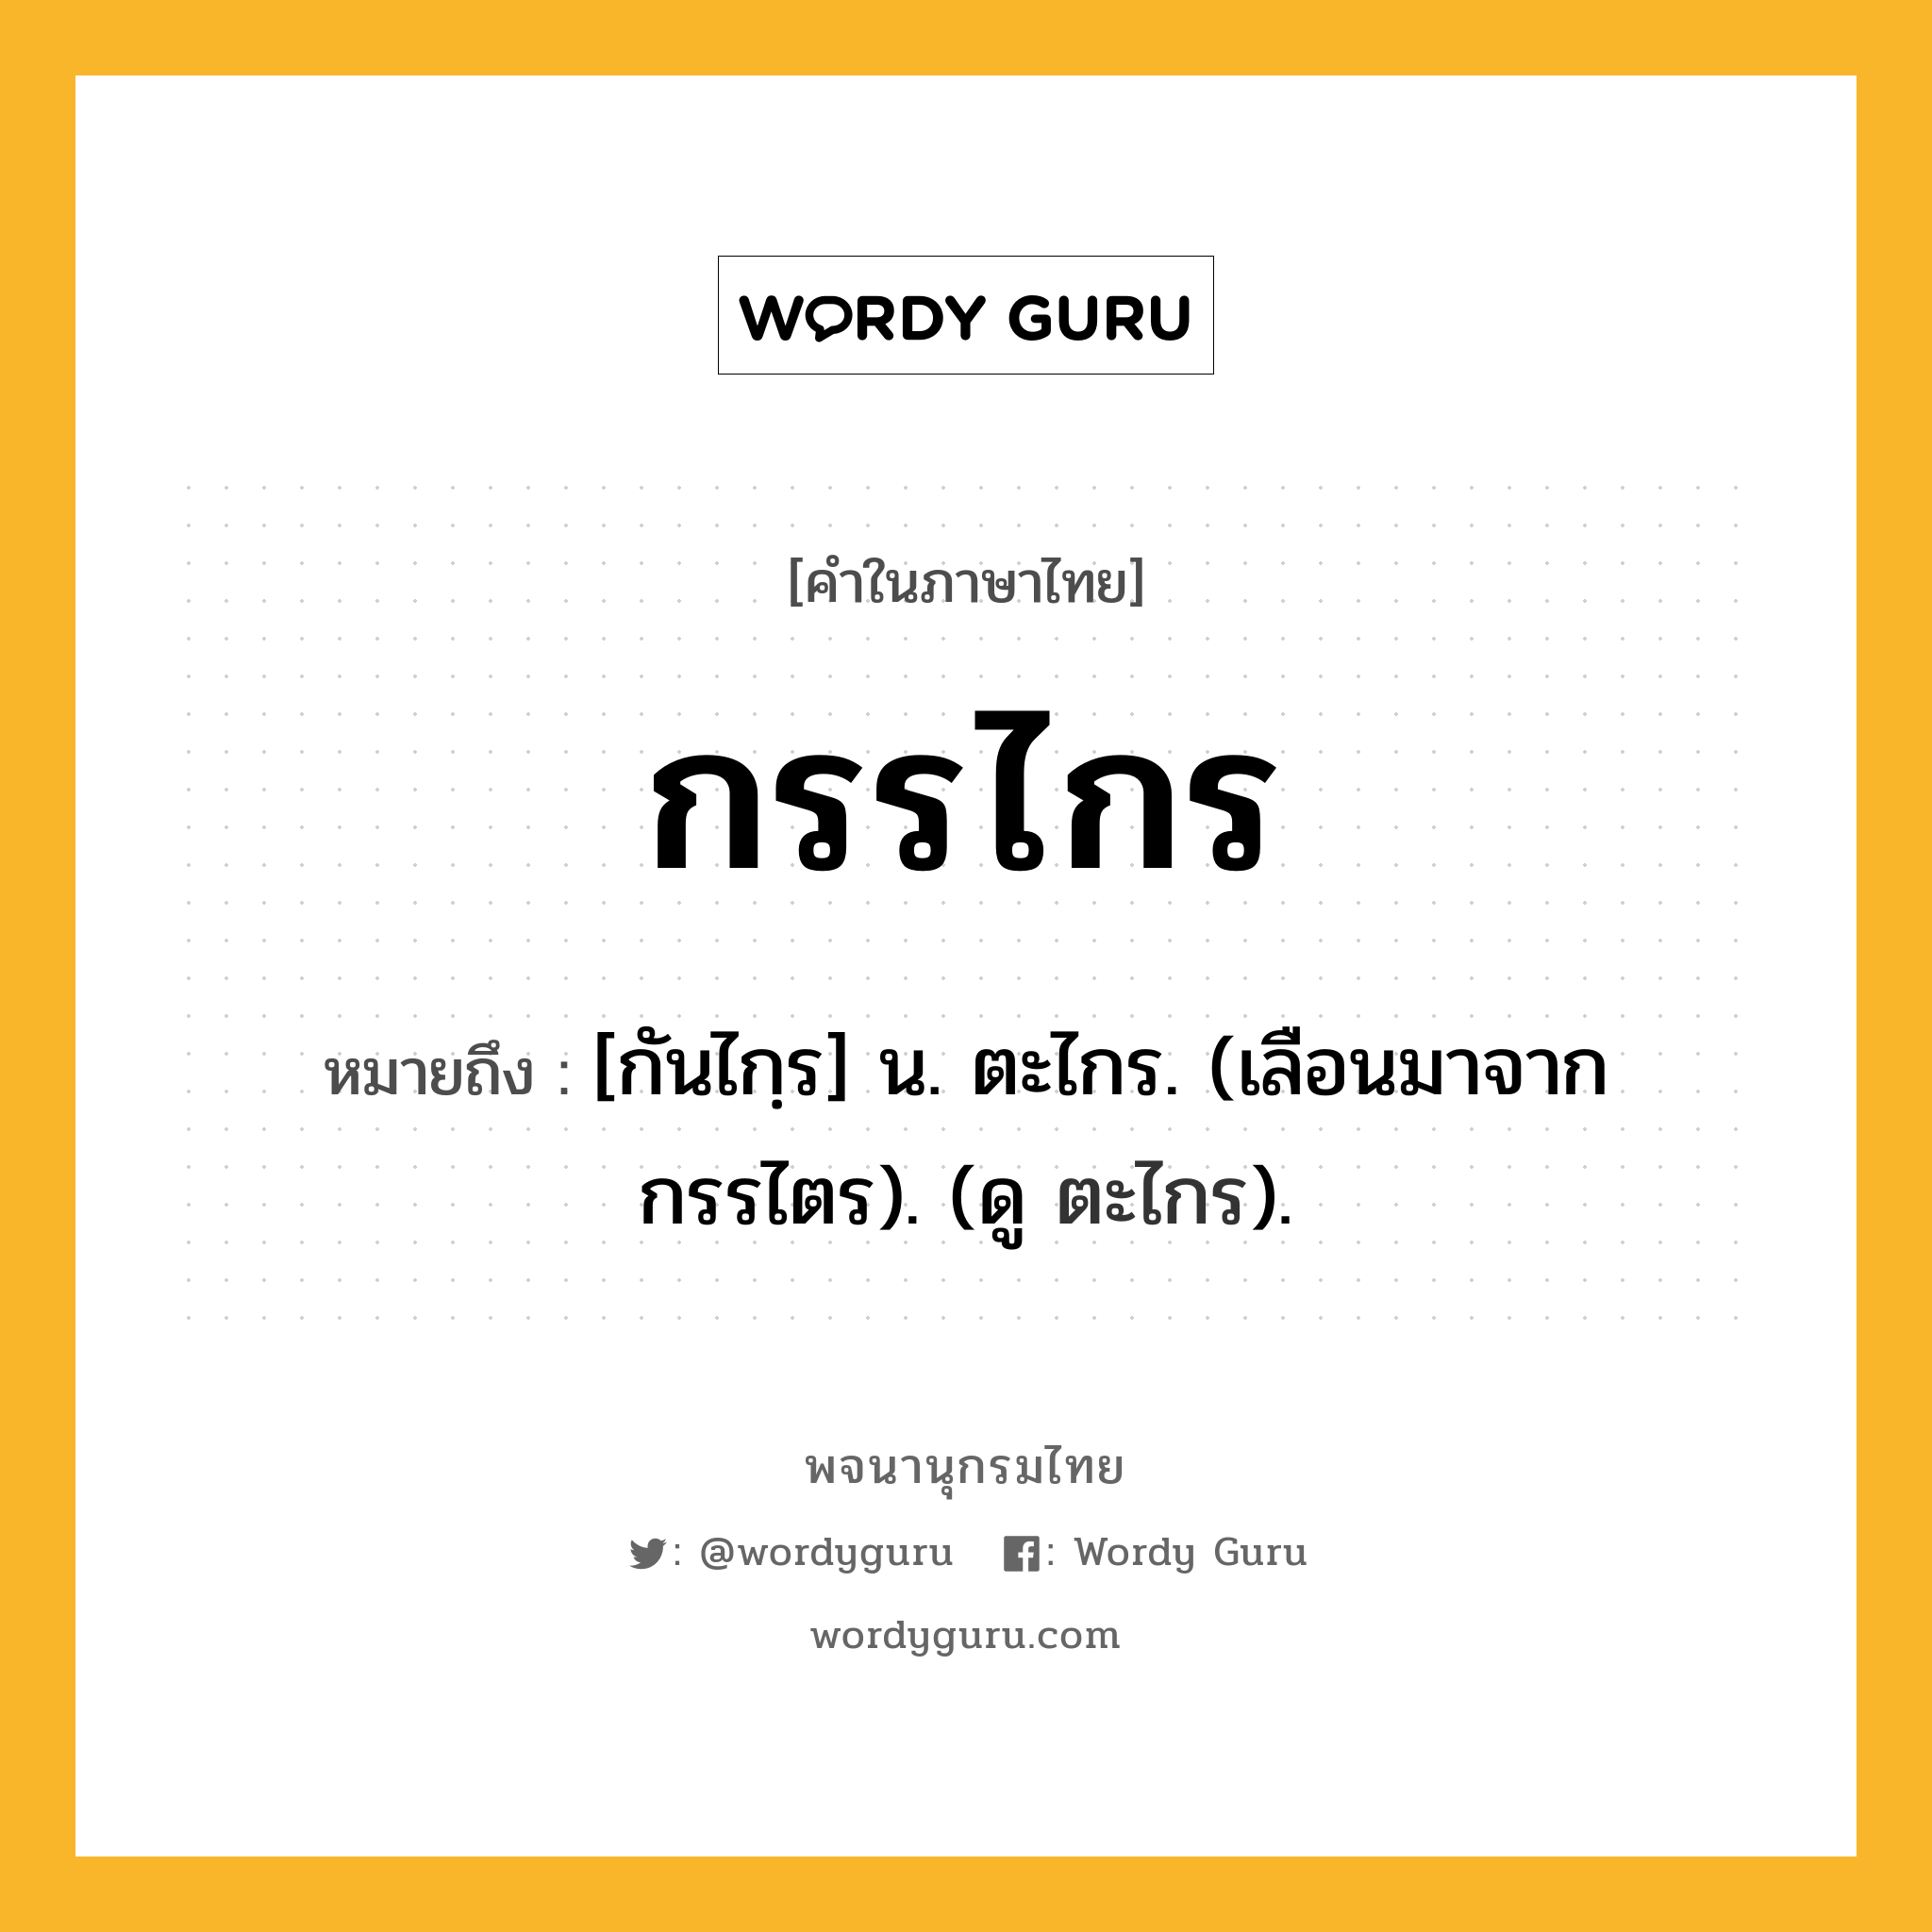 กรรไกร หมายถึงอะไร?, คำในภาษาไทย กรรไกร หมายถึง [กันไกฺร] น. ตะไกร. (เลือนมาจาก กรรไตร). (ดู ตะไกร).